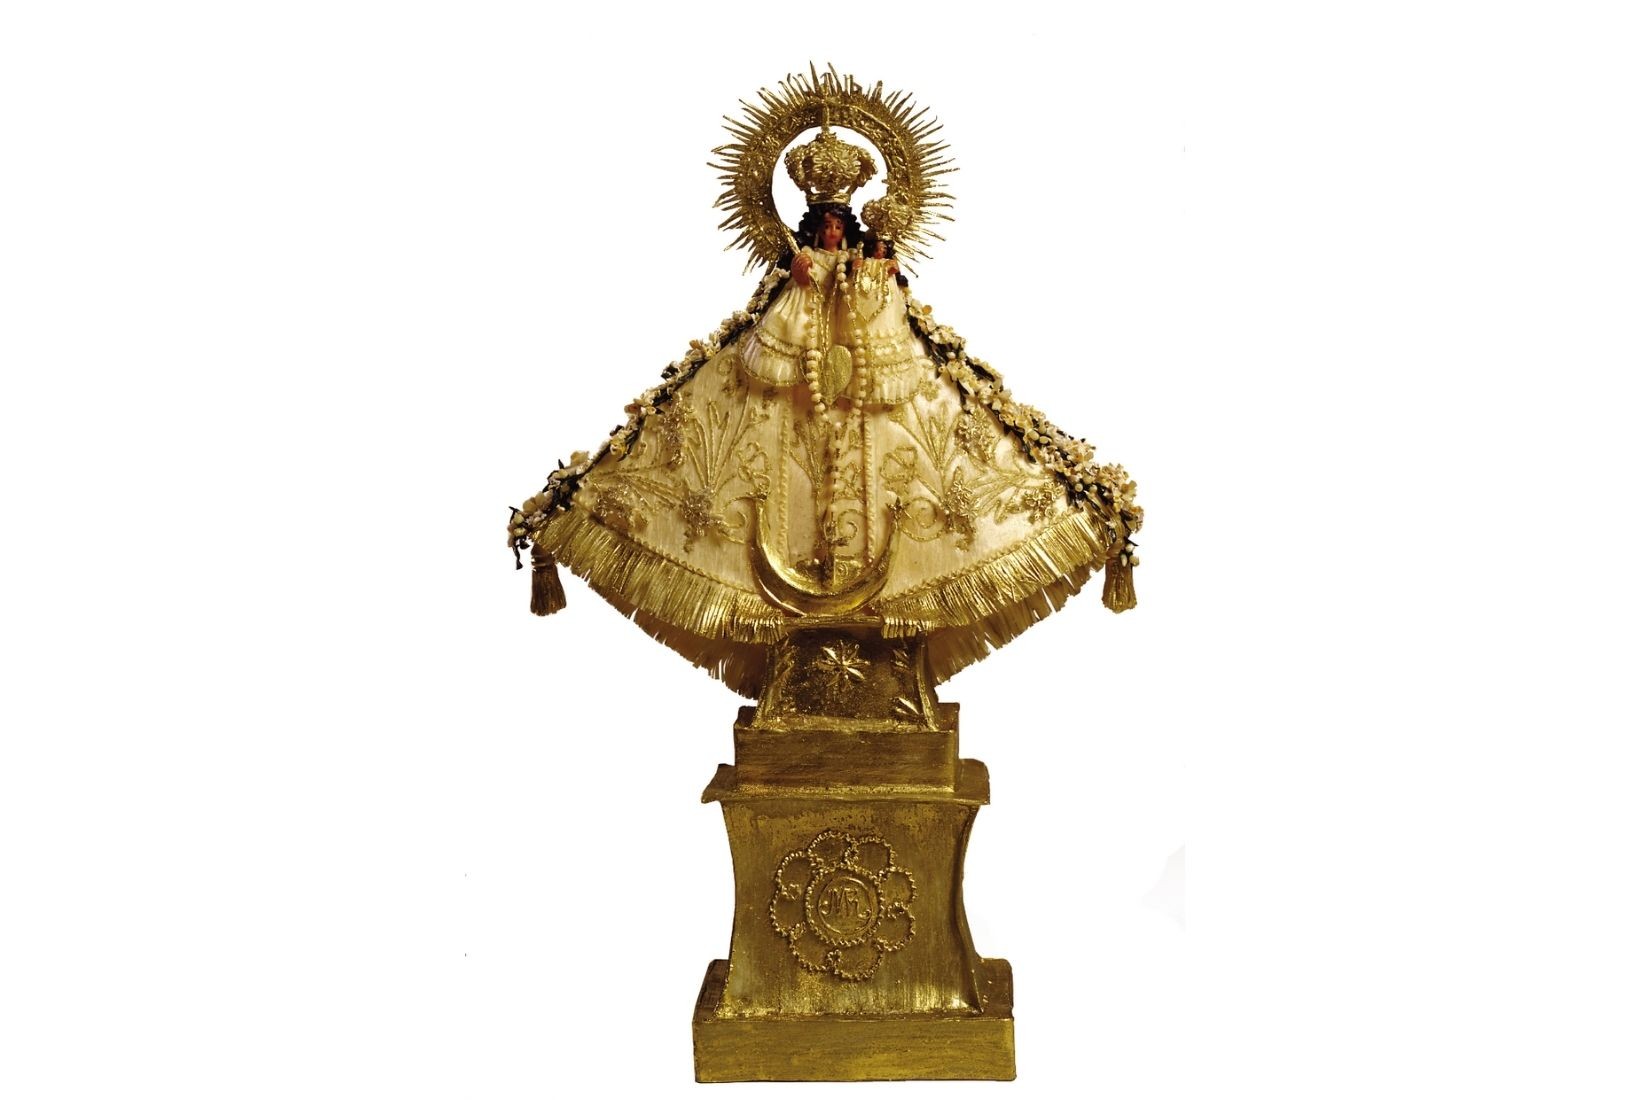 Virgen de Talpa. Chilte modelado y pintado. Artesana Ma. de la Luz L. López Morán. Talpa de Allende, Jal. Col. Part. (Foto: Nicola Lorusso).